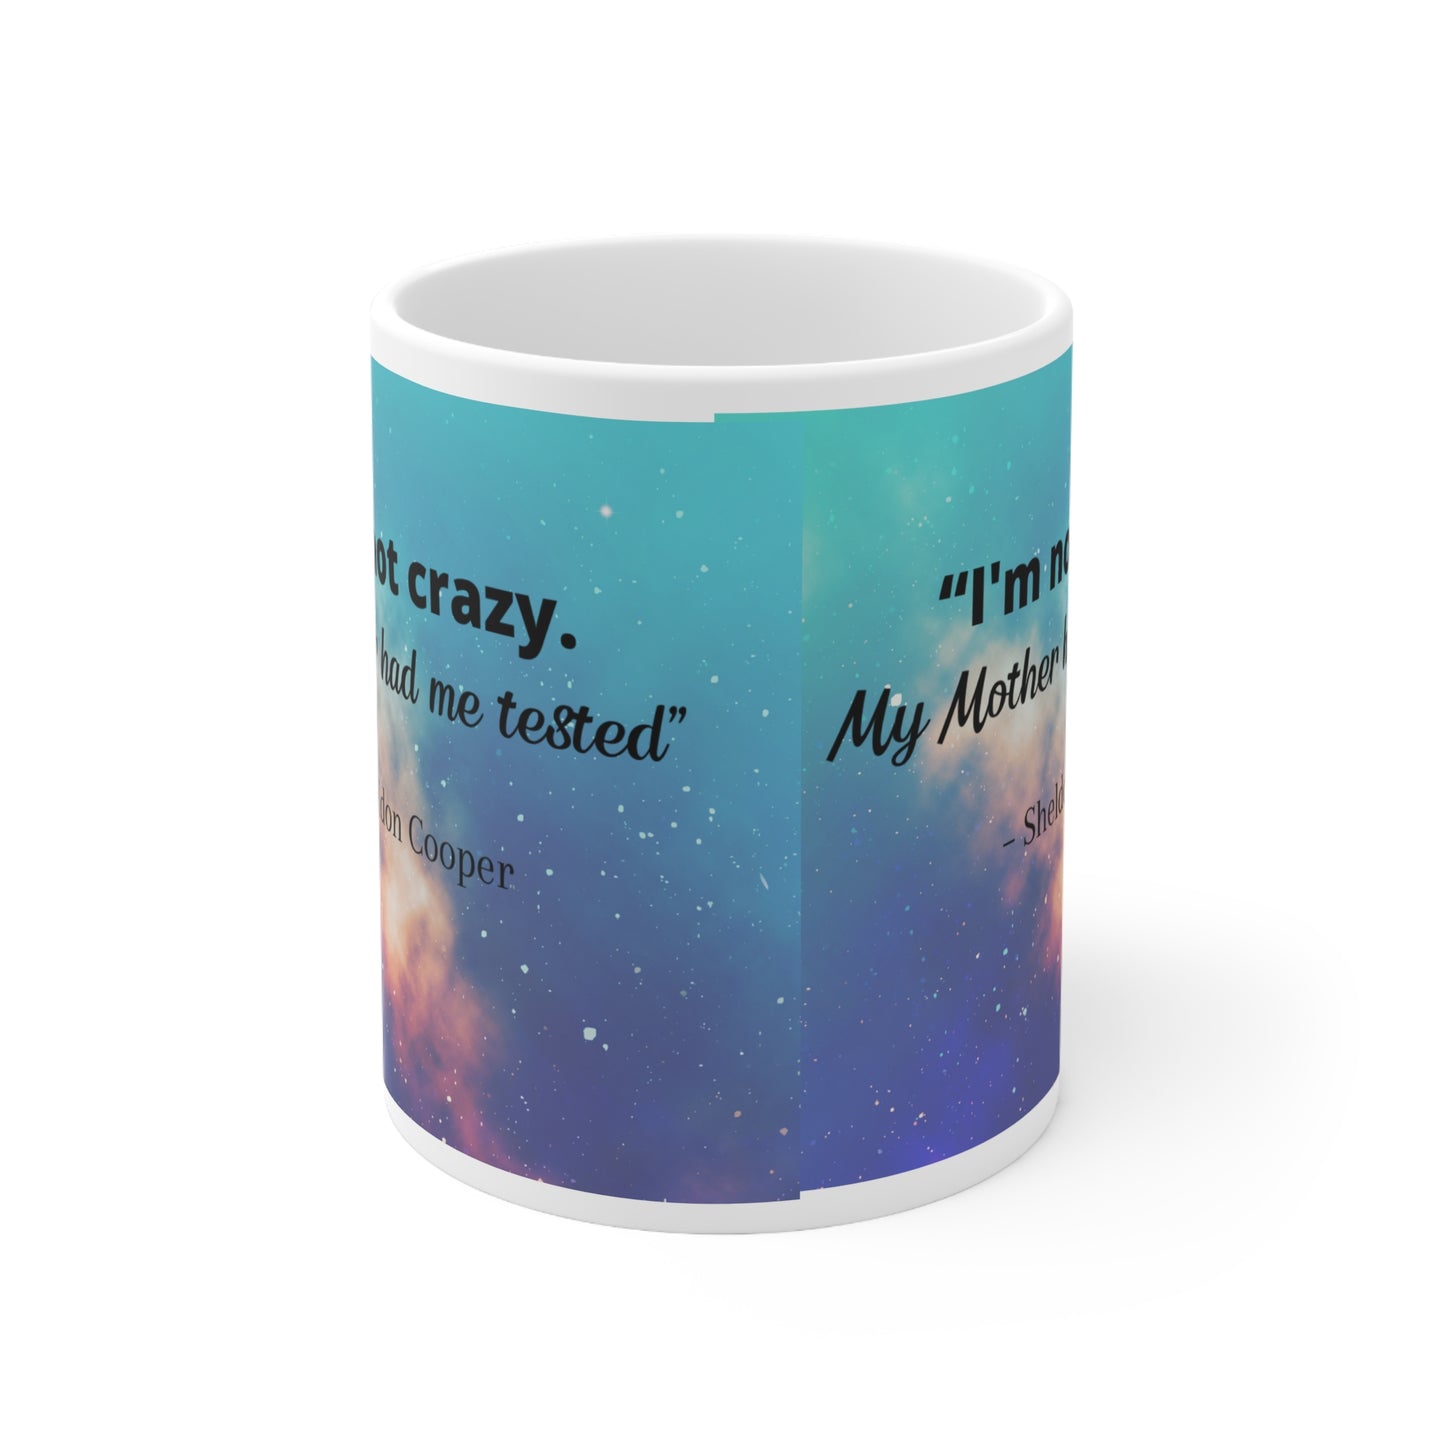 Big Bang theory mug, Sheldon Cooper "Crazy" quote coffee and tea mug, Big bang theory fan birthday gift